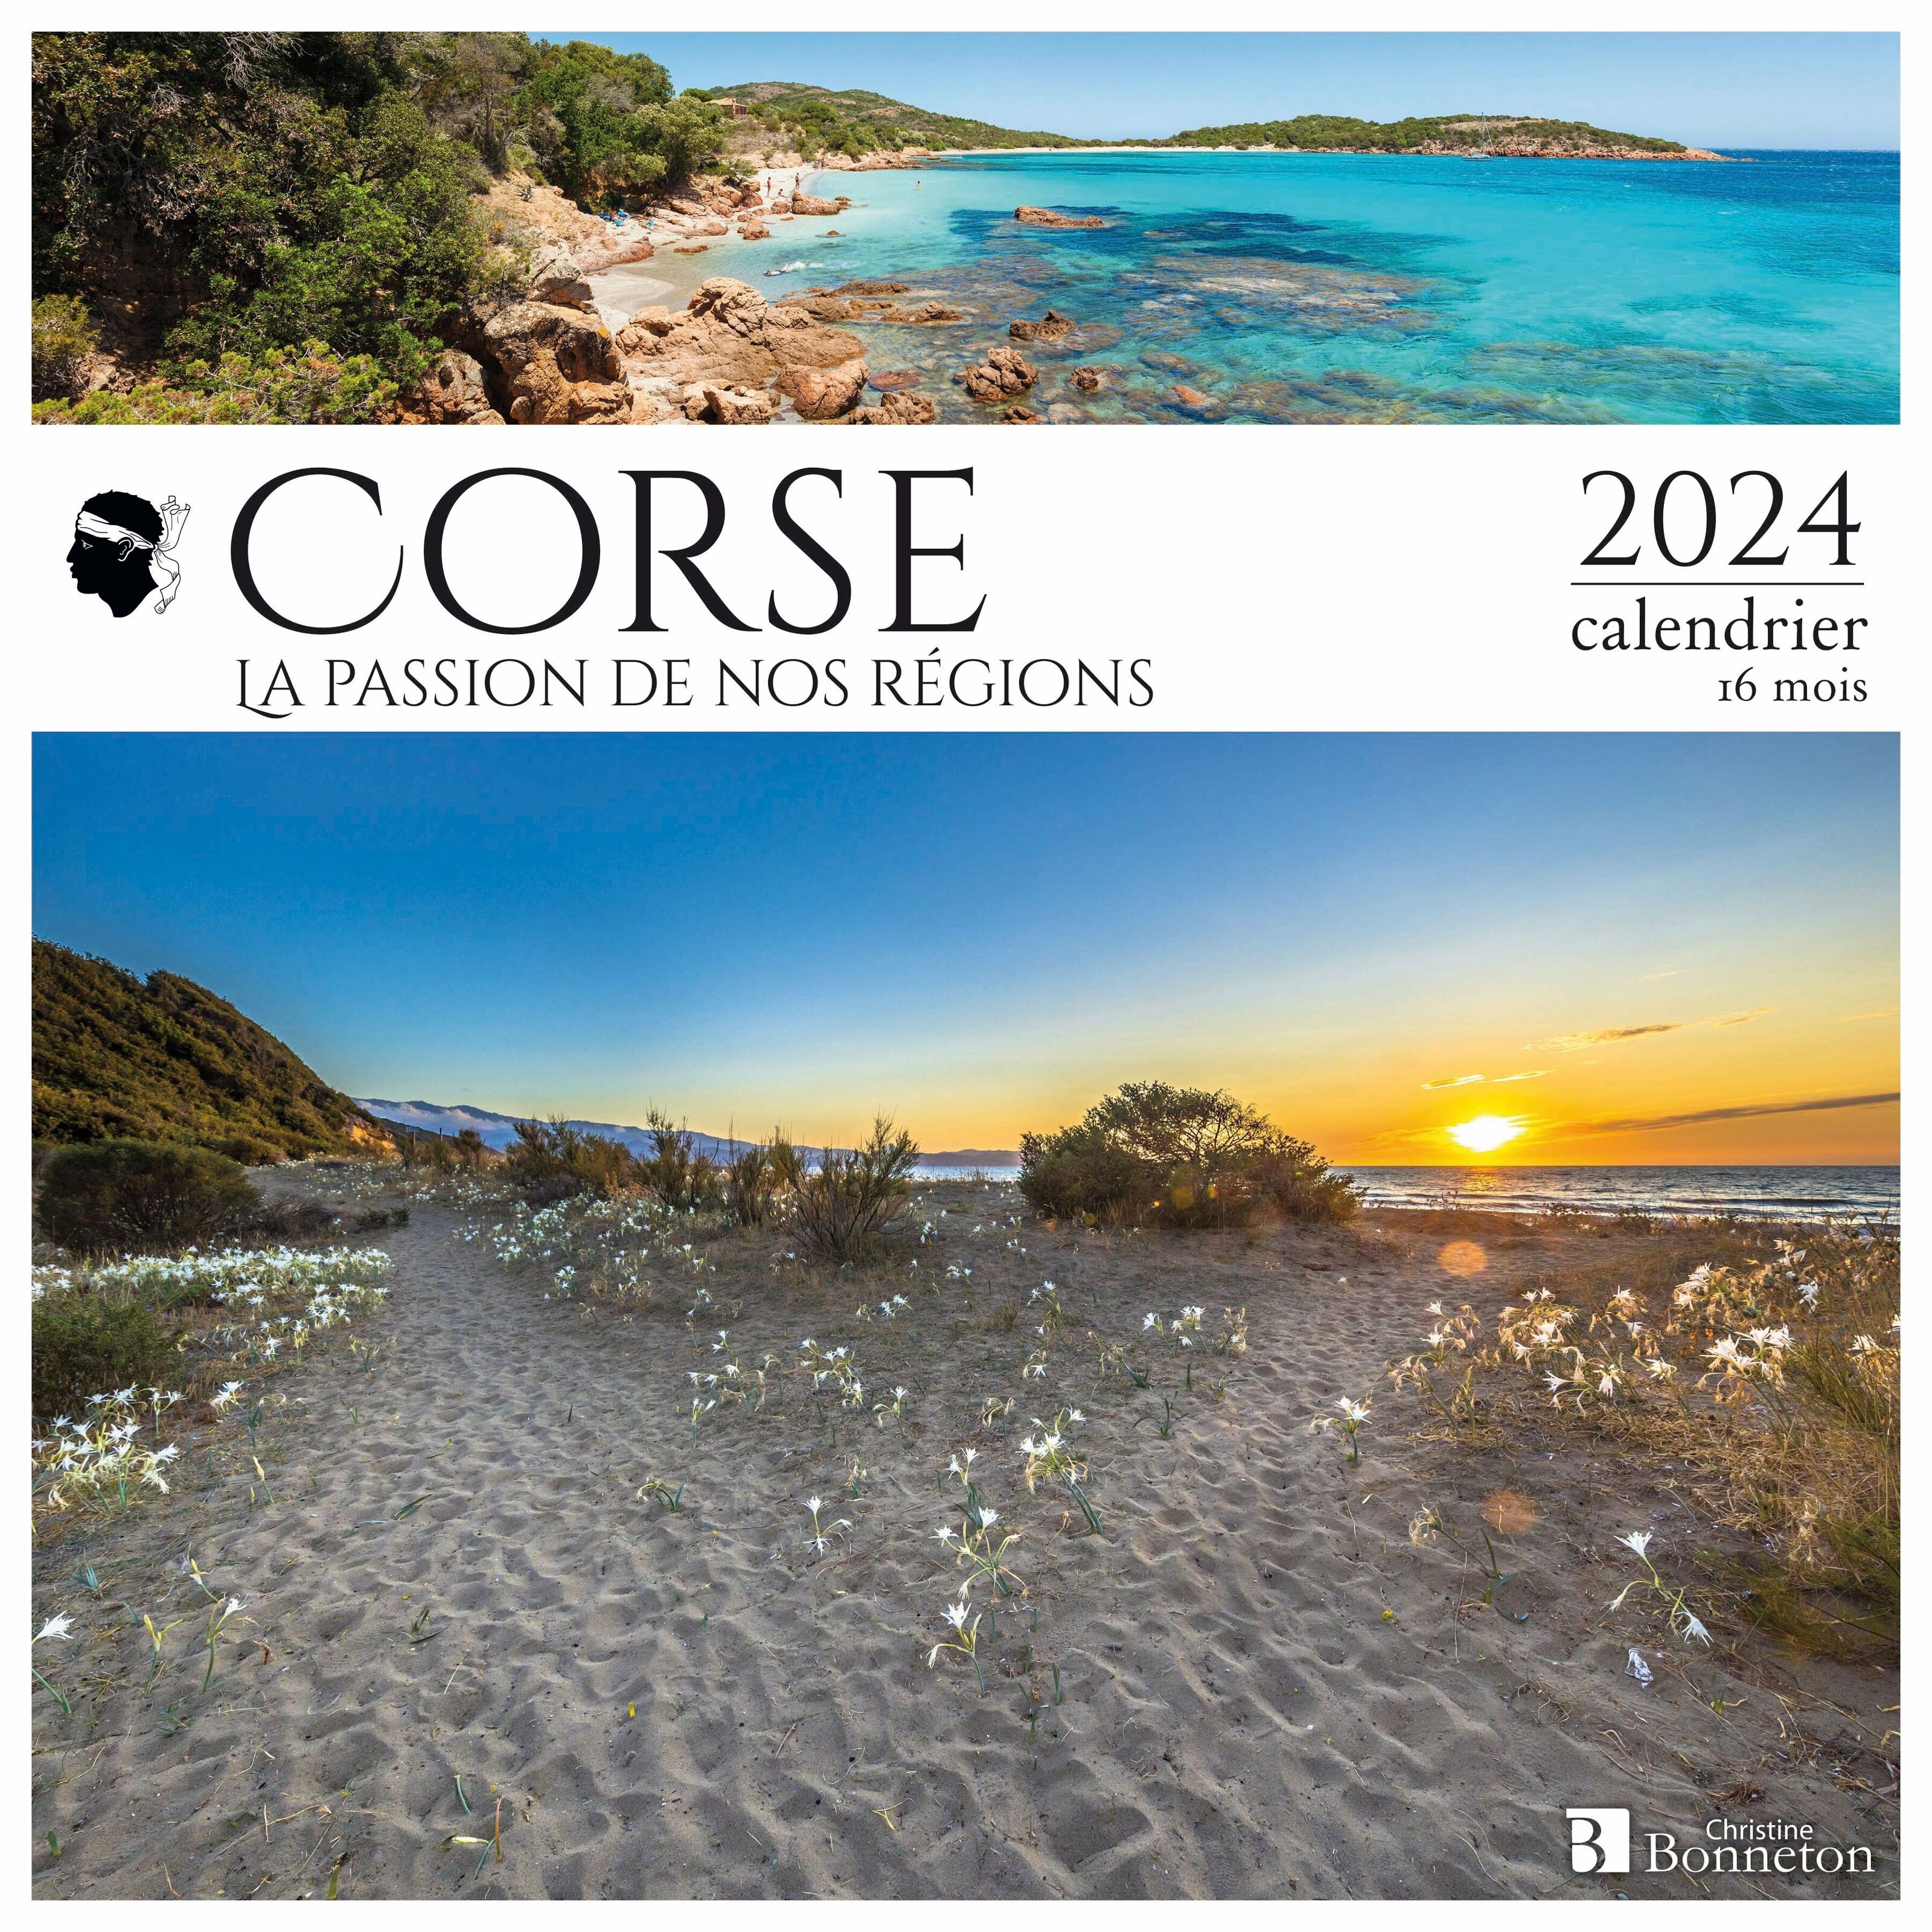 Achat Calendrier 2024 Corse (ls) en gros